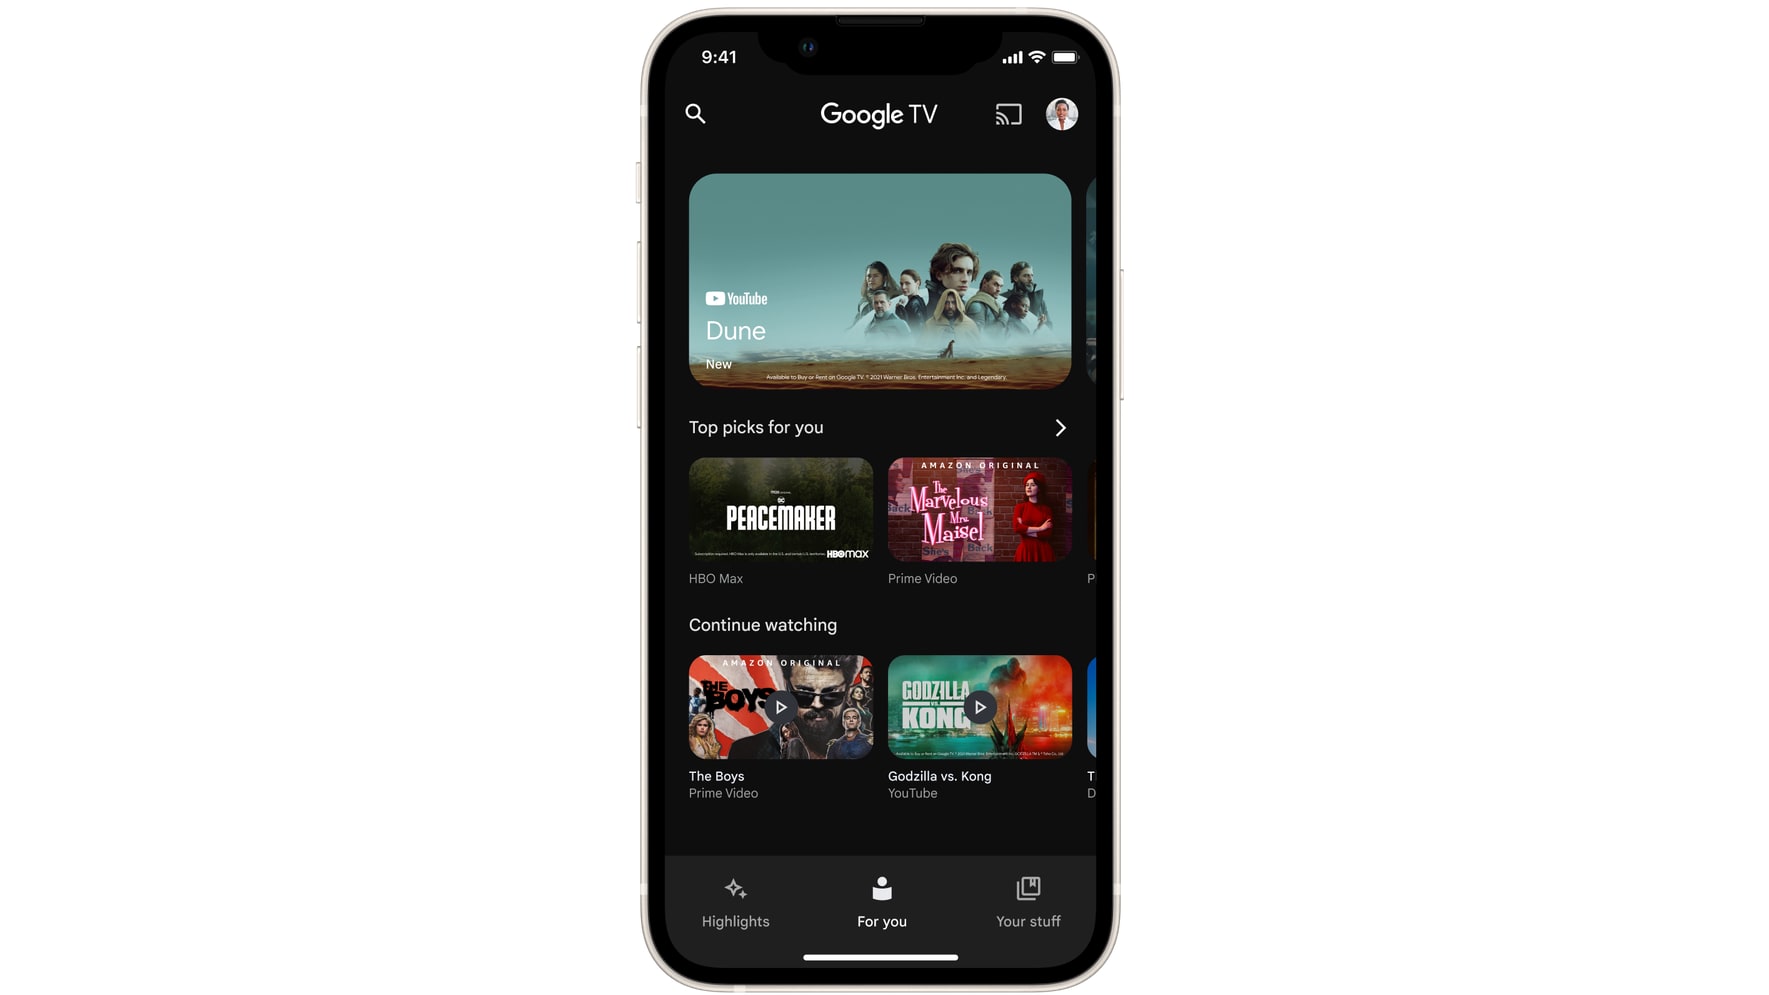 Dans cette image en vedette, l'application Google TV est montrée en cours d'exécution sur un iPhone.  Il remplace le précédent "Émissions de télévision et films Google" application